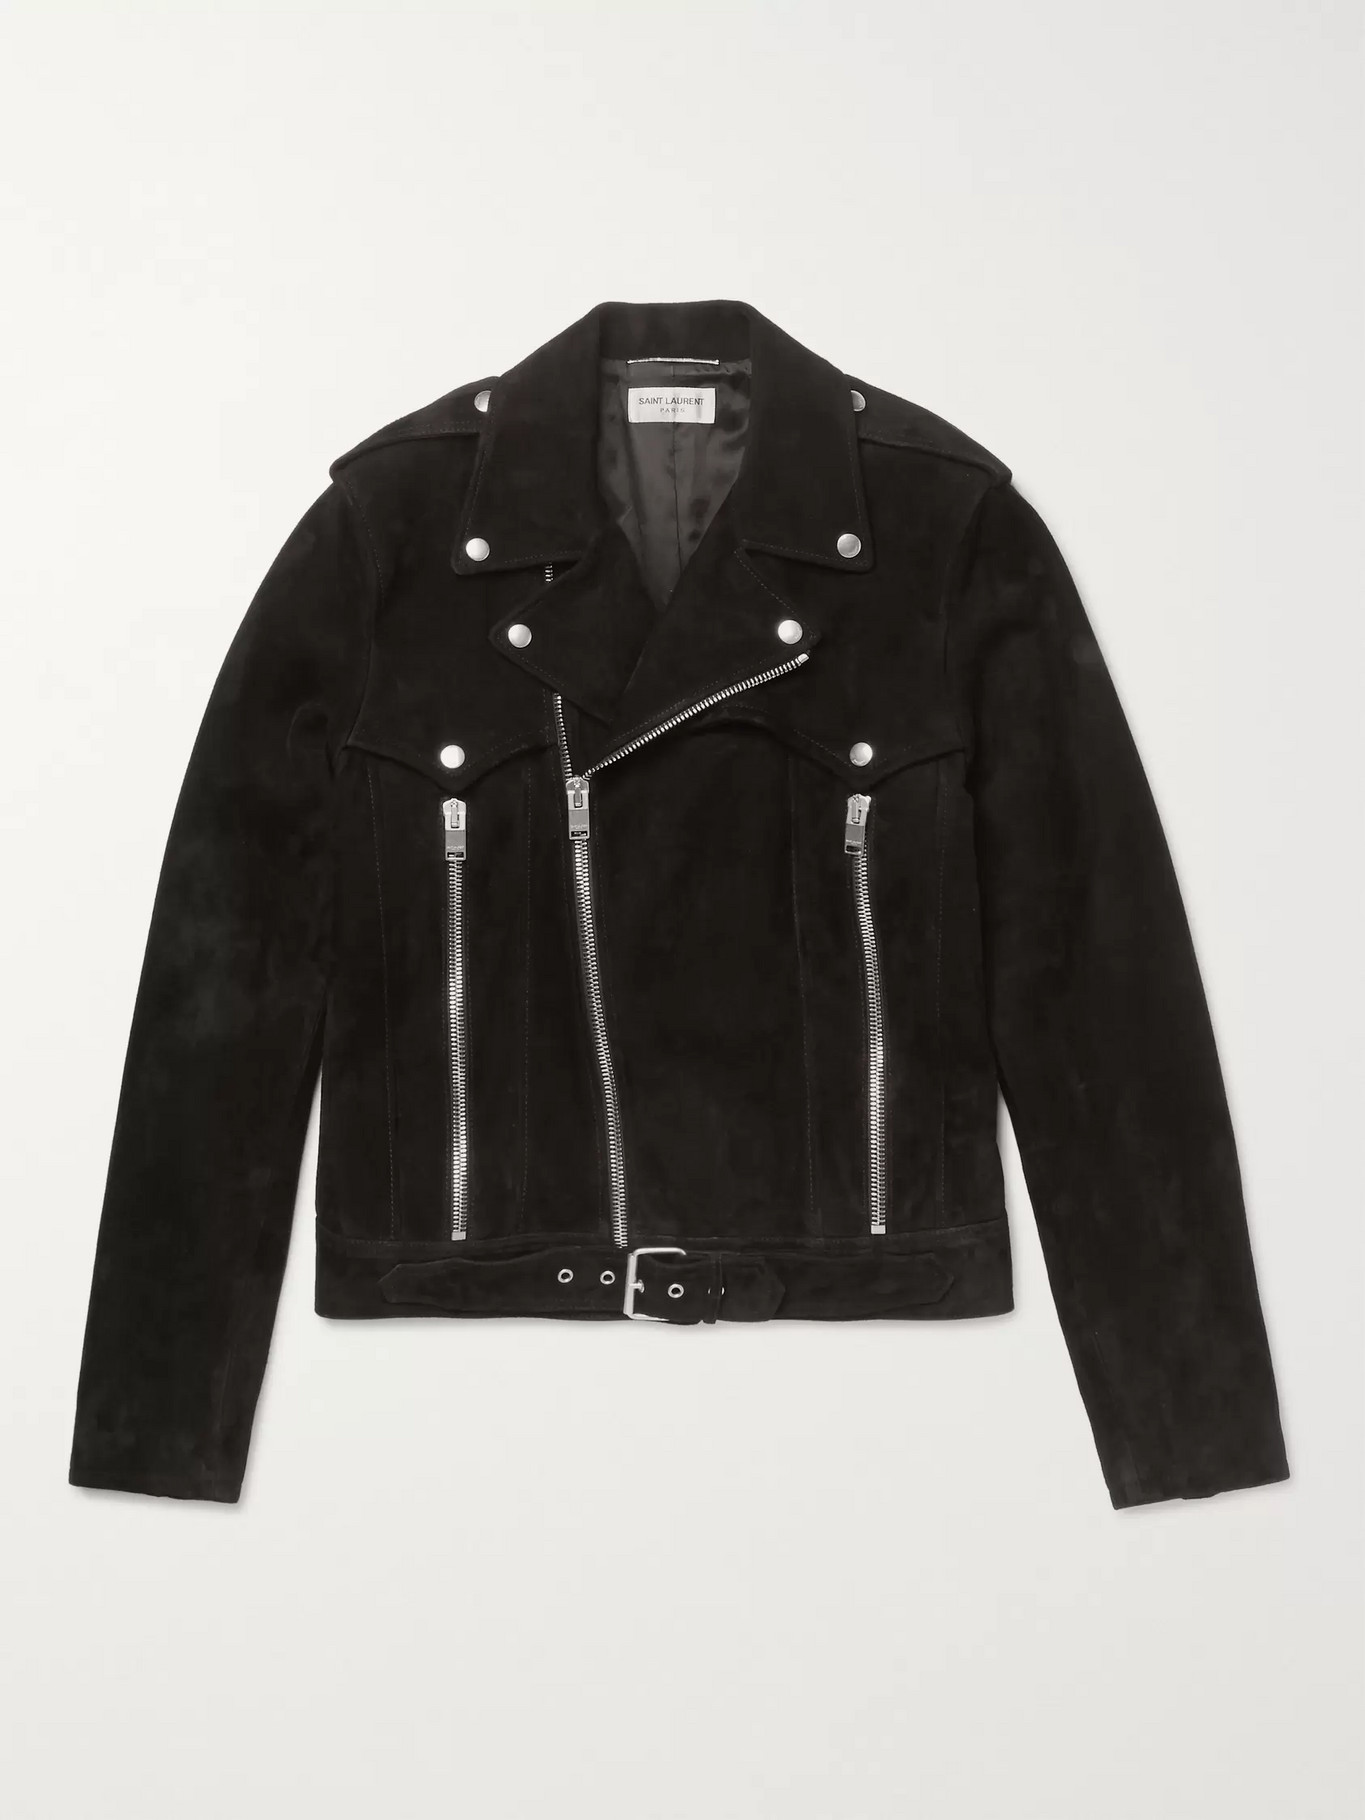 Men's Designer Leather jackets - Shop Men's Fashion Online at MR ...